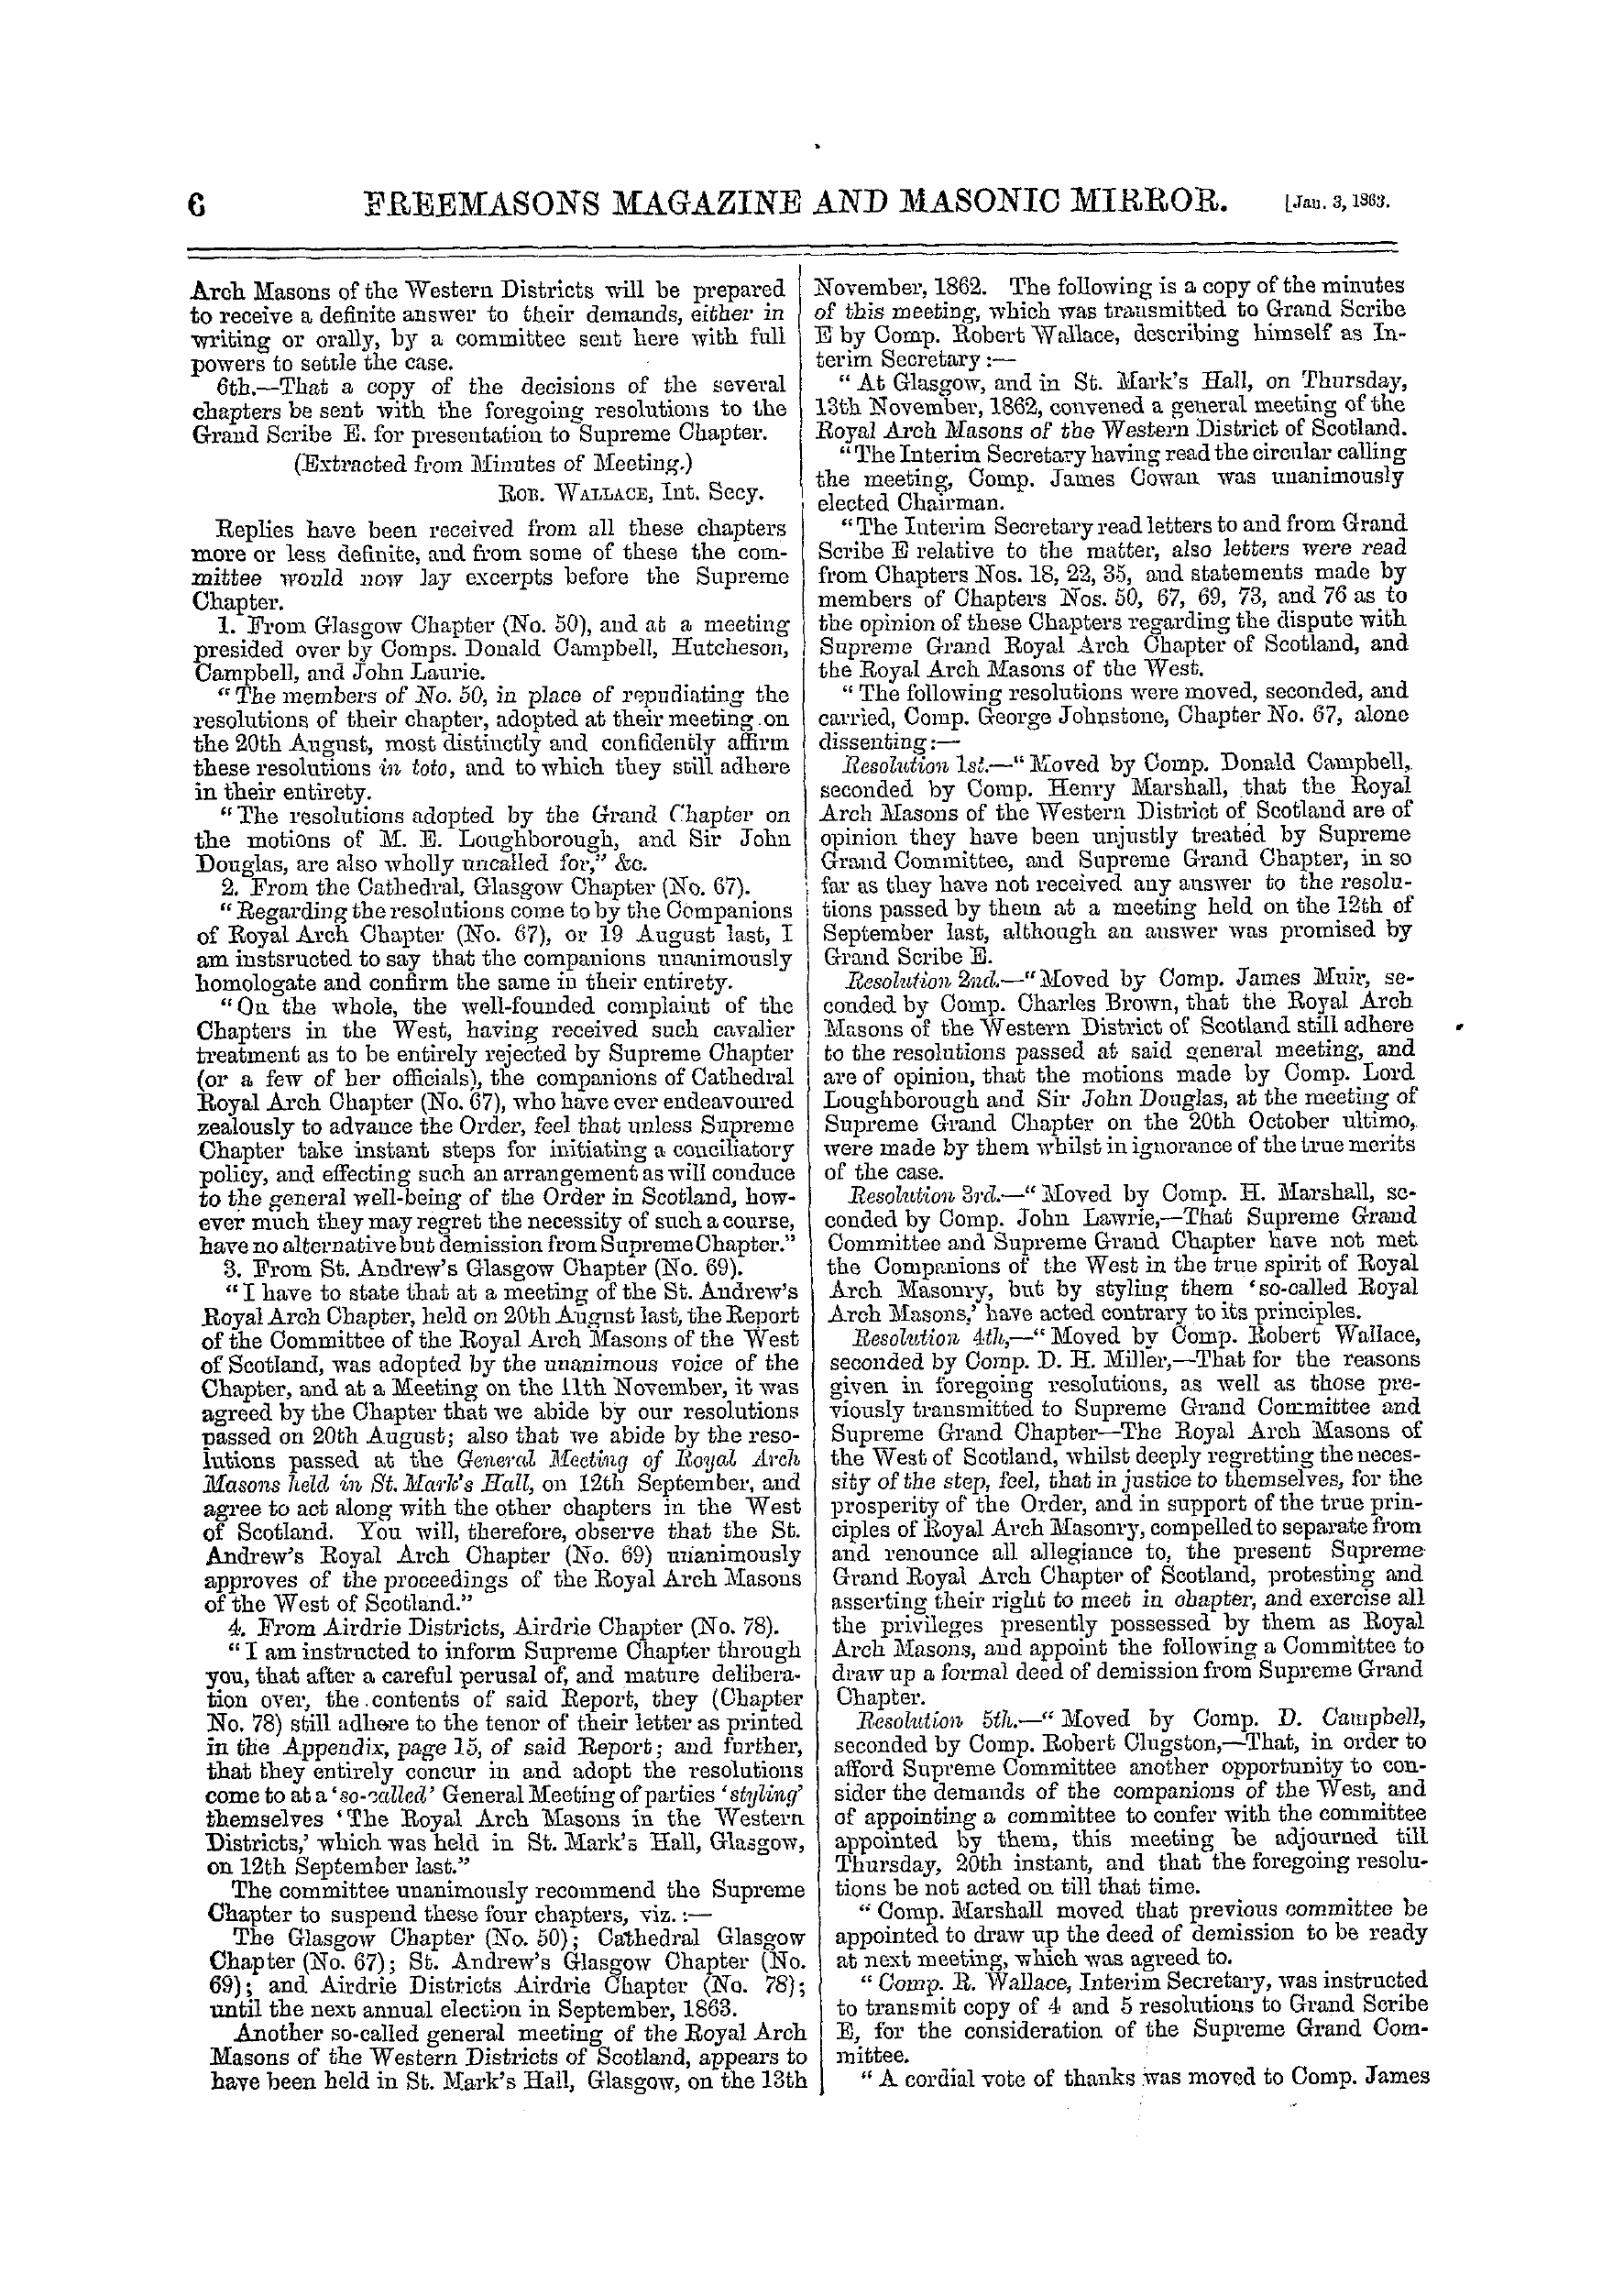 The Freemasons' Monthly Magazine: 1863-01-03: 13